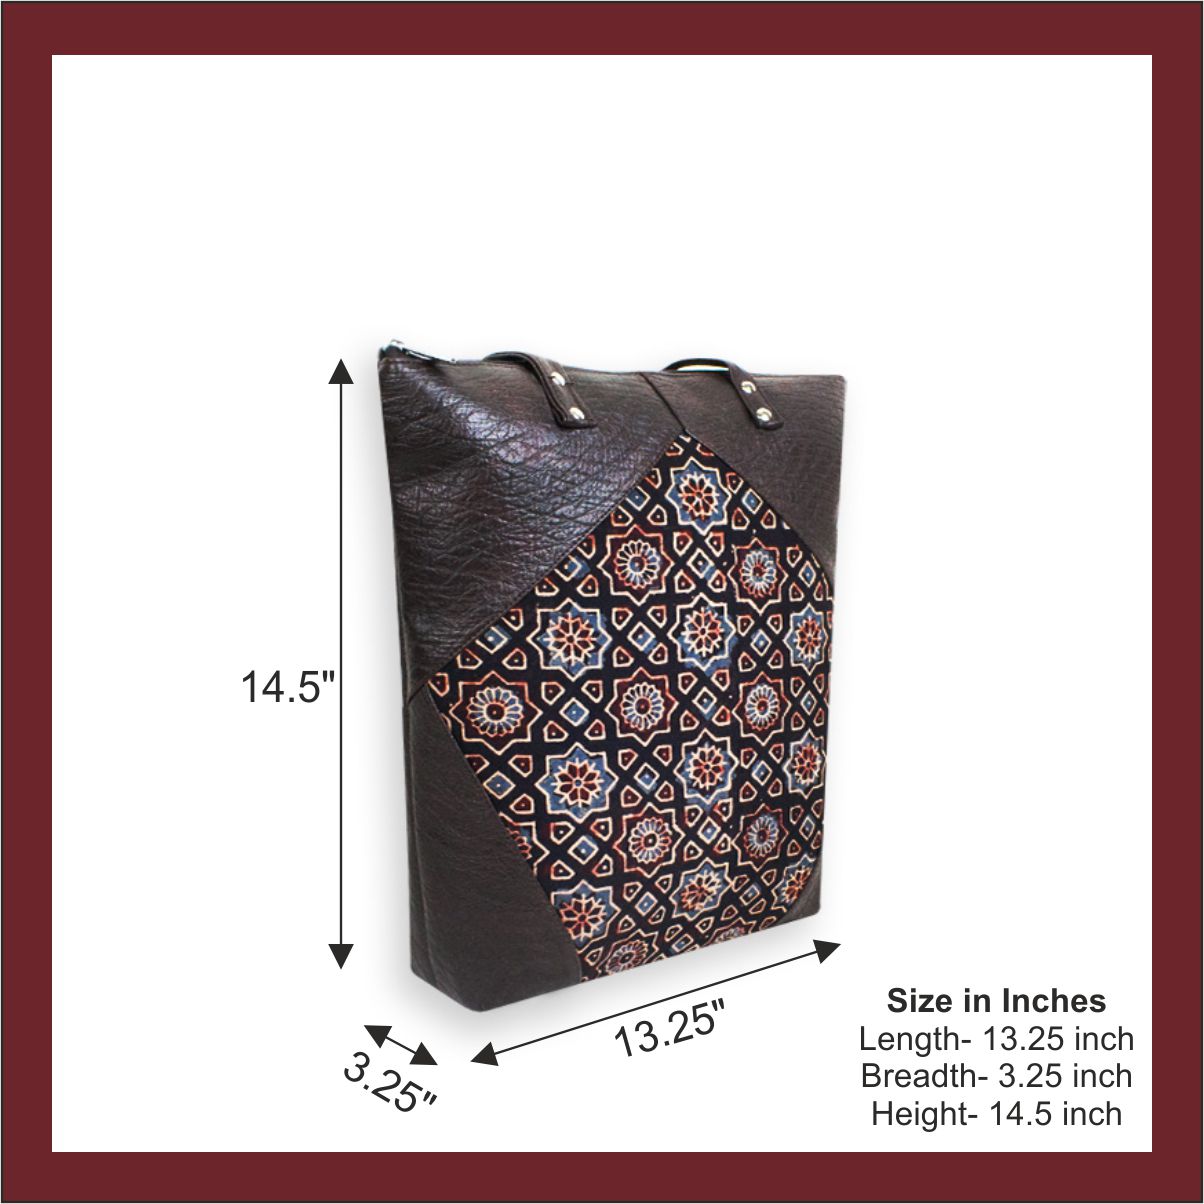 Persian Tile Block Printed Tote Bag